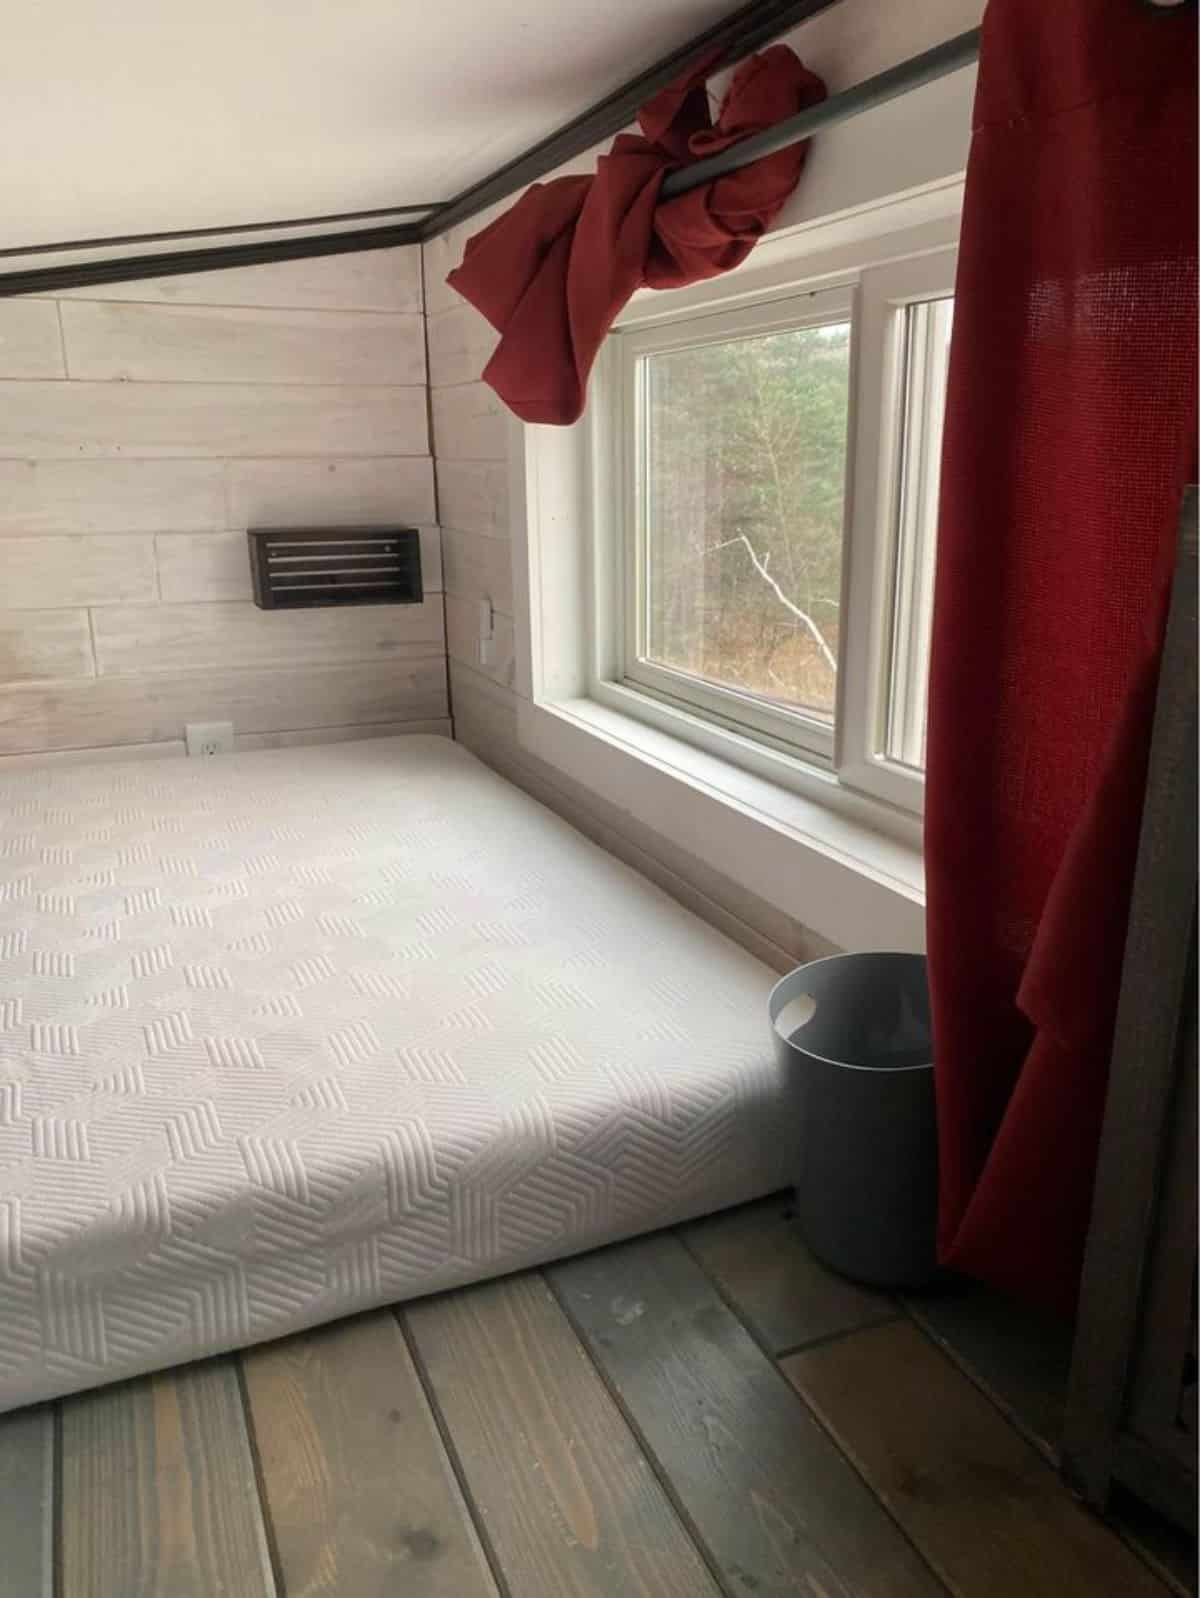 Loft bedroom has a huge window